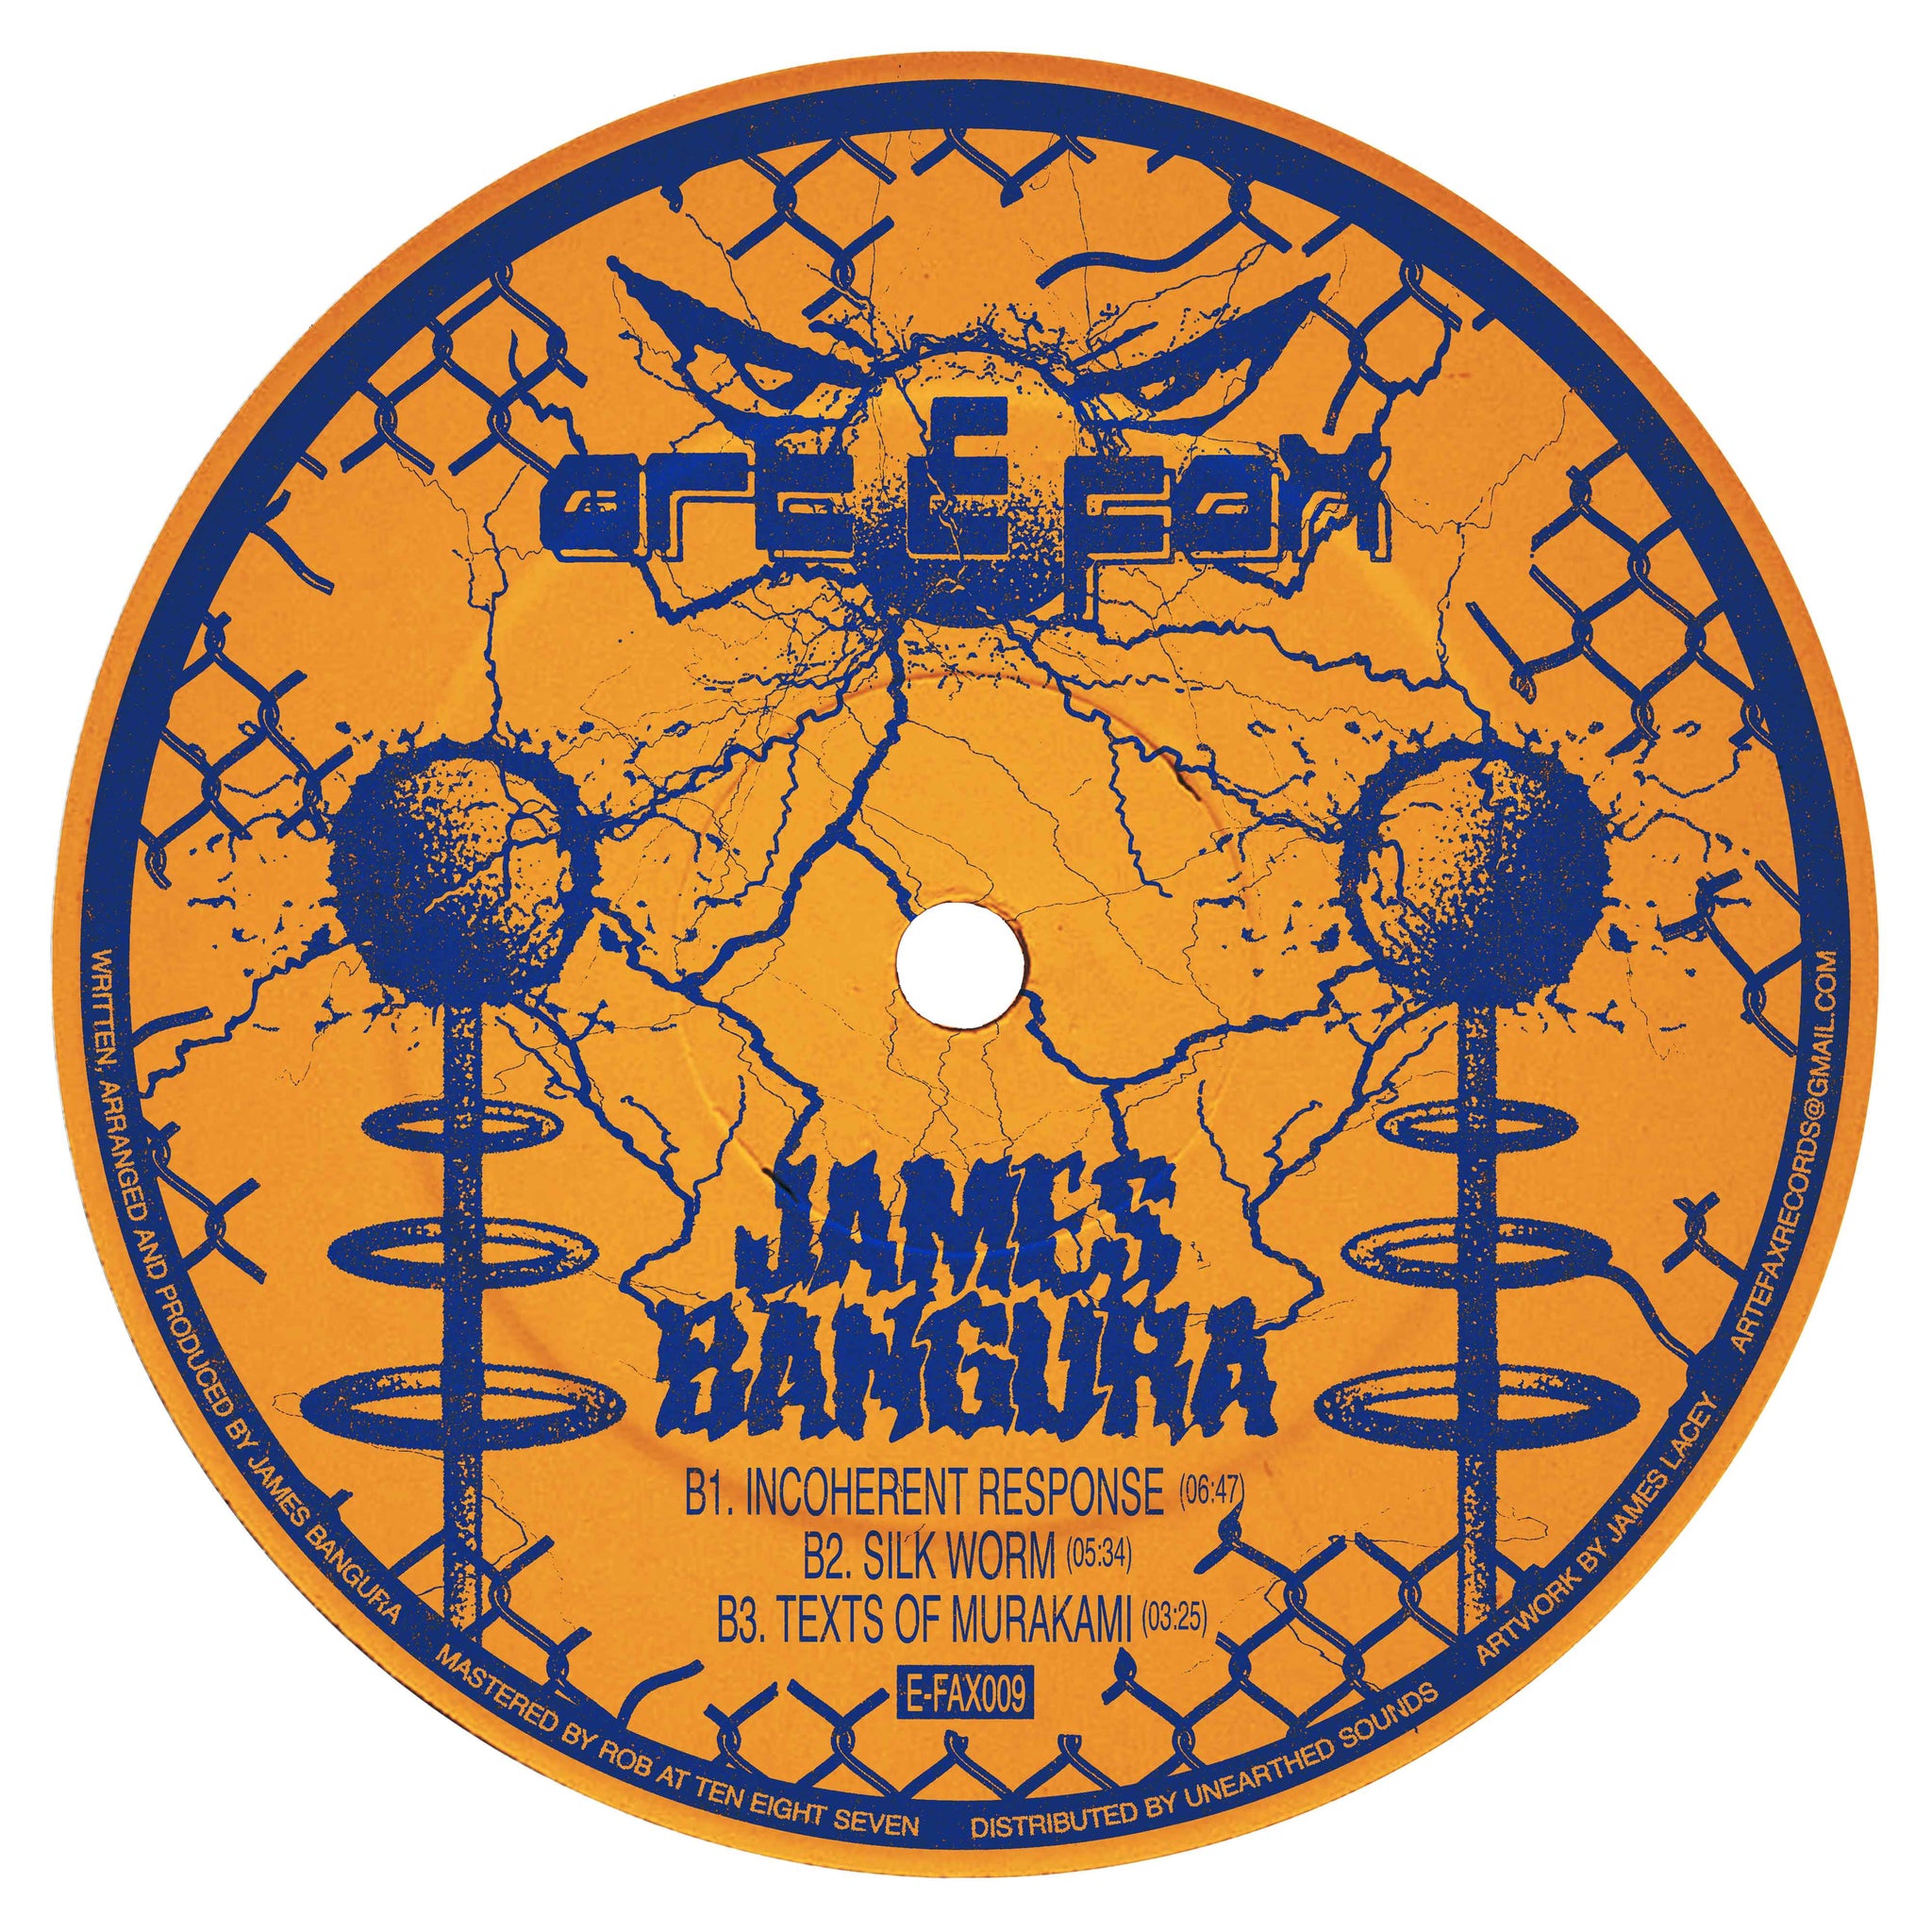 James Bangura - E-FAX009